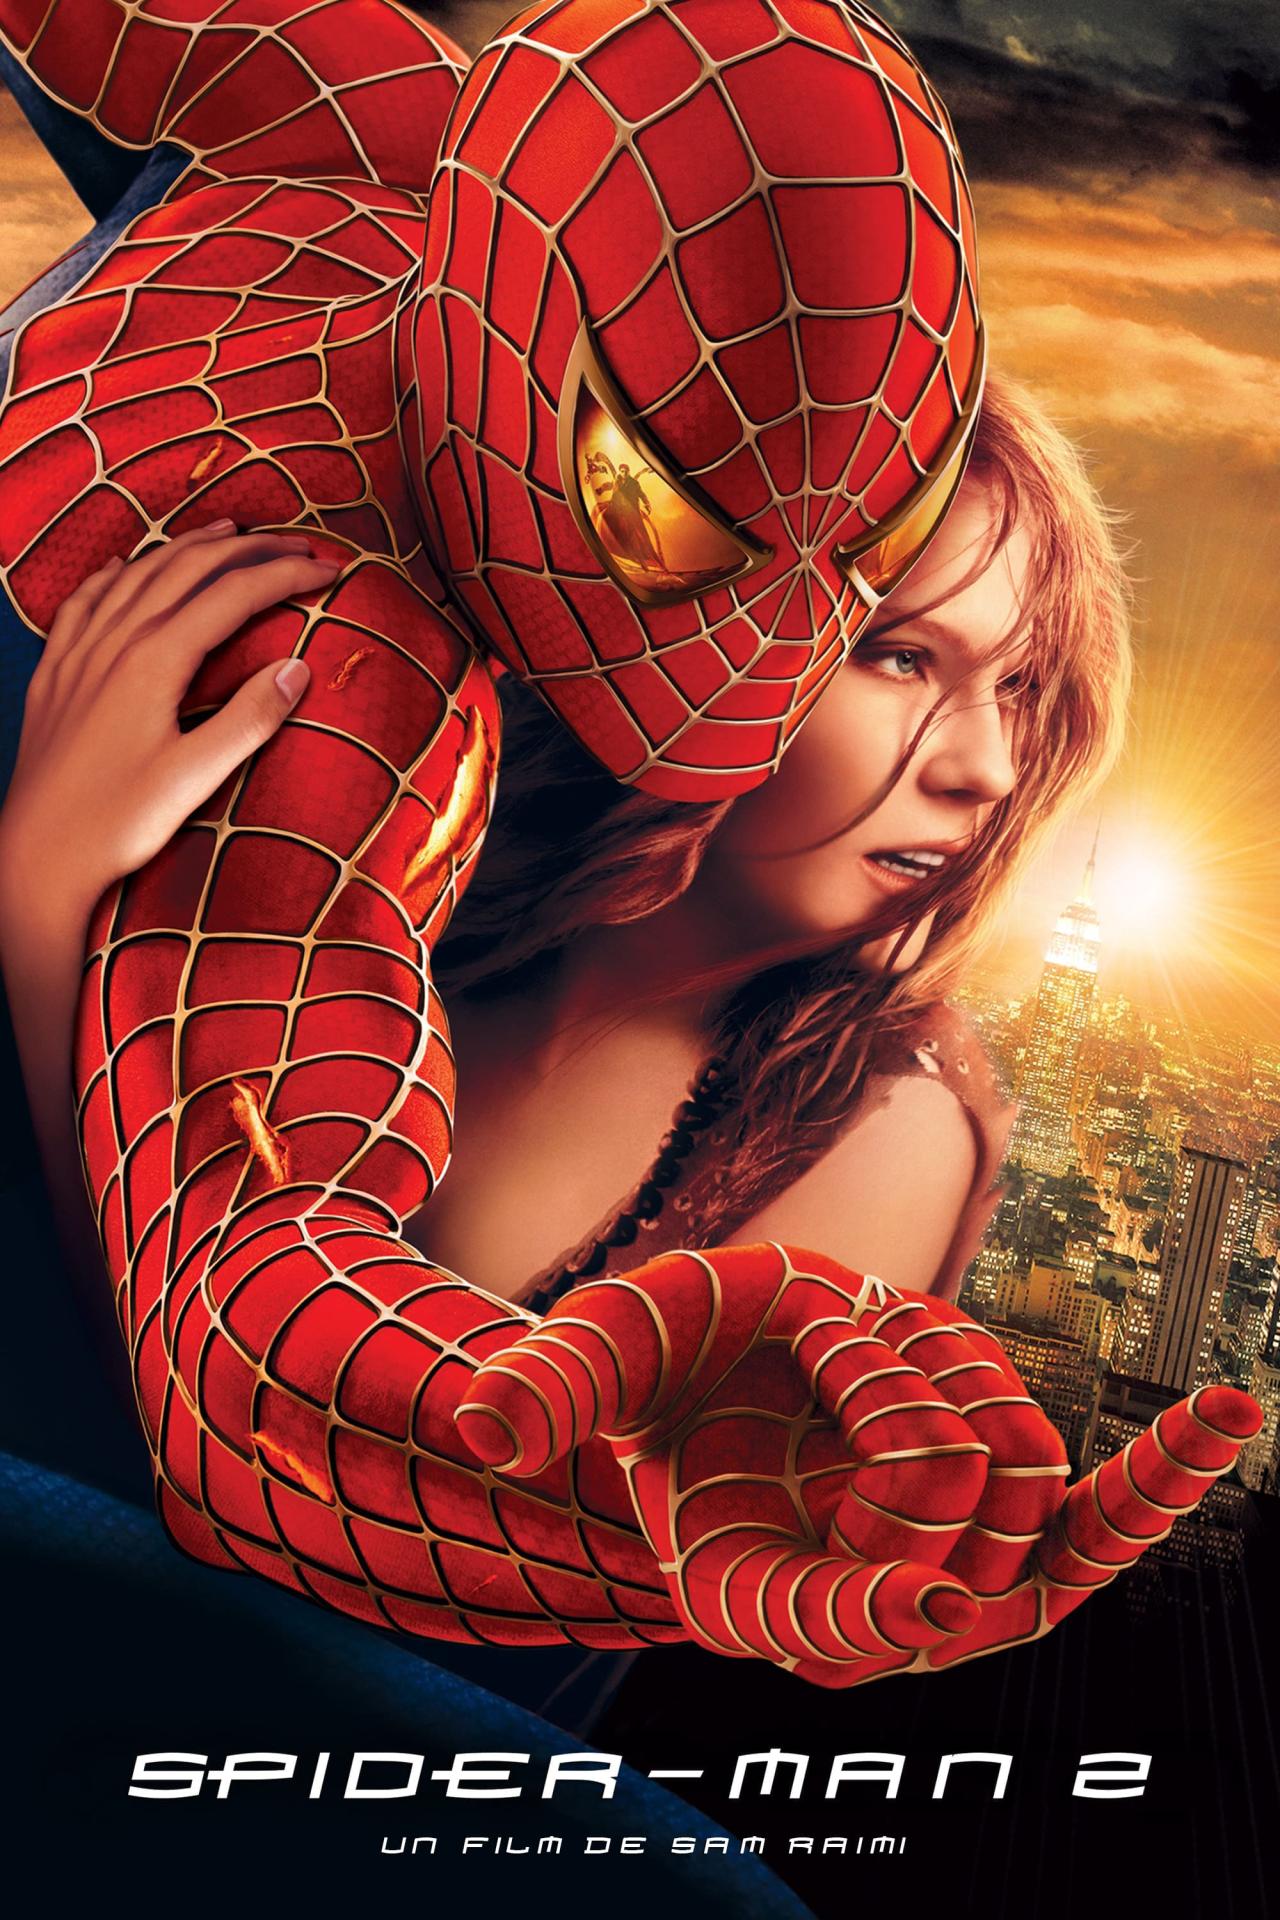 Affiche du film Spider-Man 2